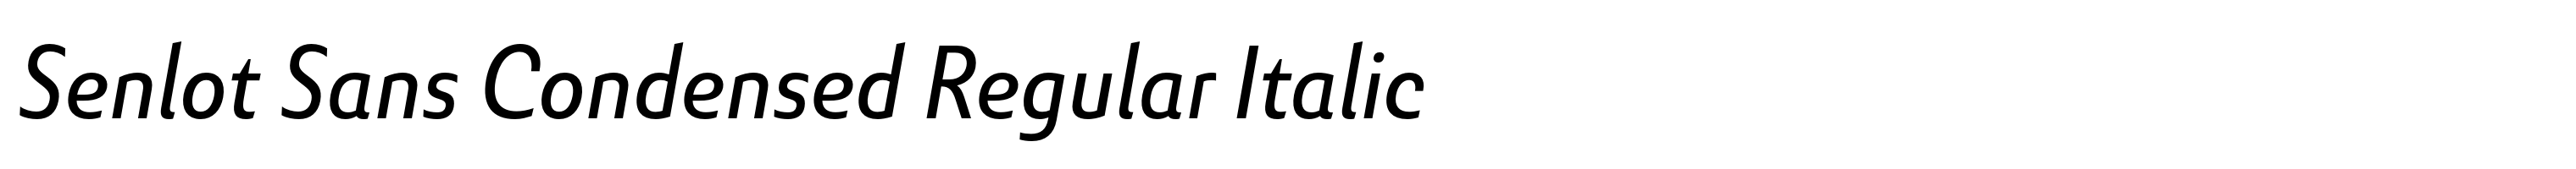 Senlot Sans Condensed Regular Italic